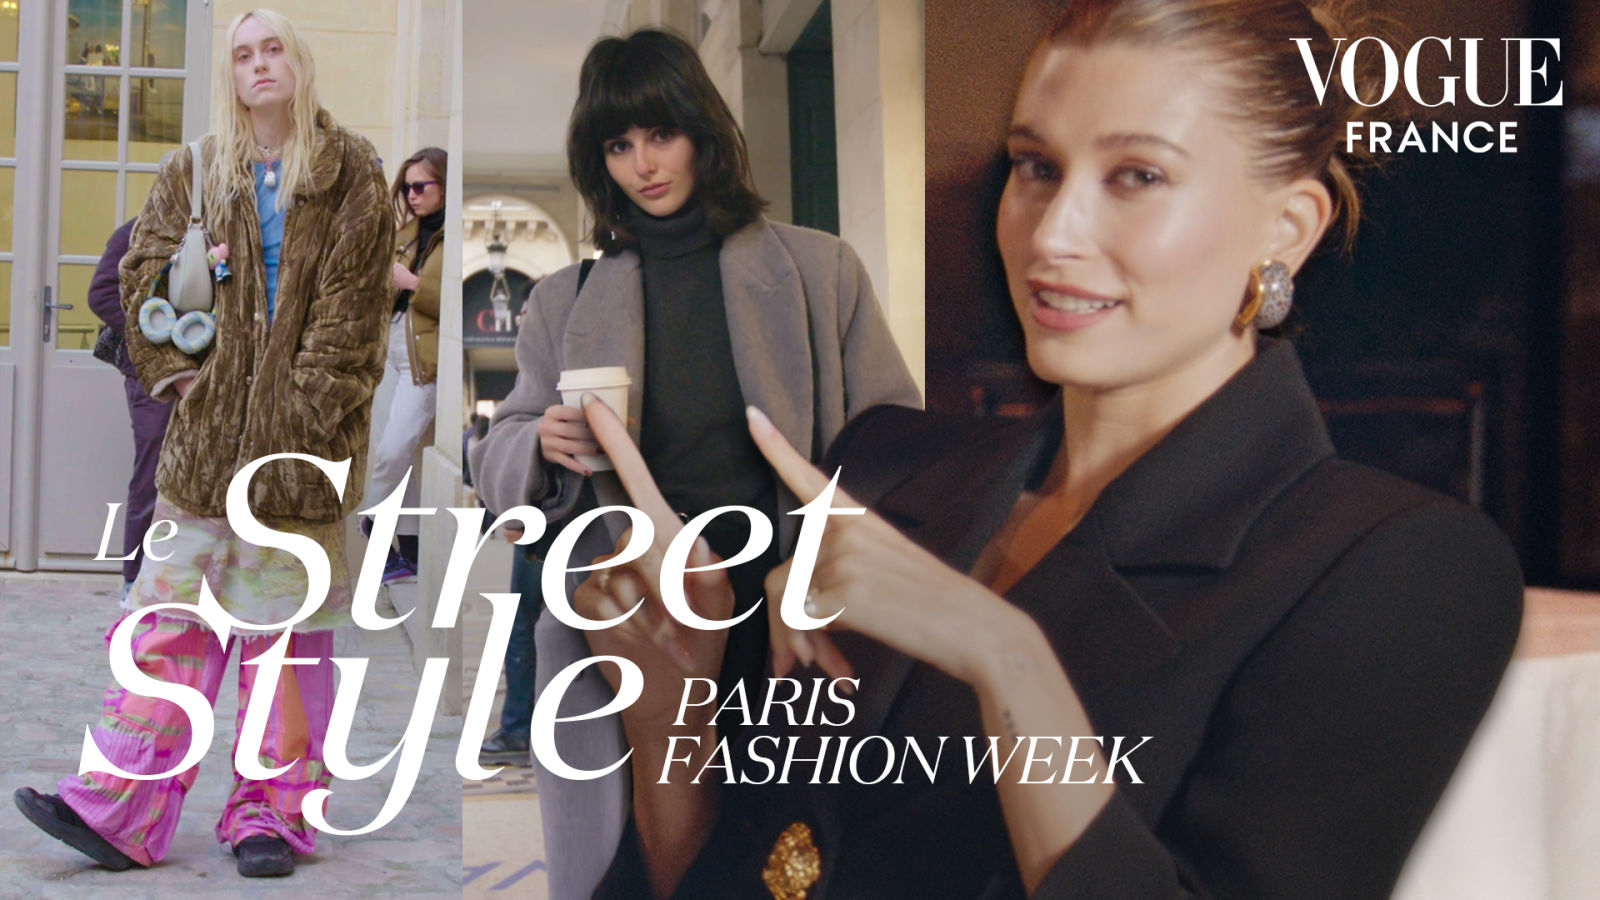 Hailey Bieber décrypte les looks parisiens de la Fashion Week | LE STREET STYLE